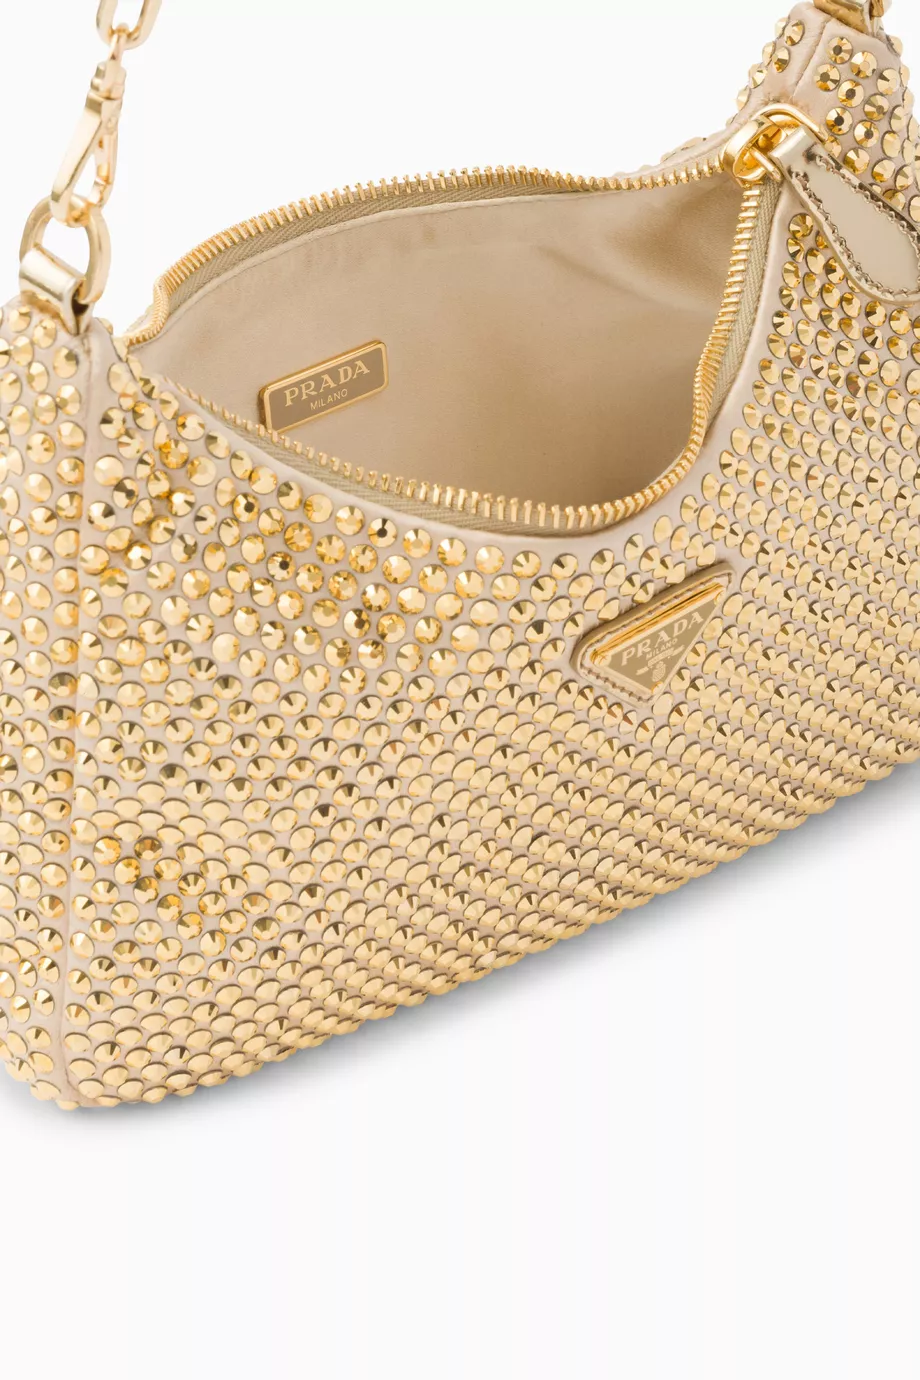 Gold Re-Edition 2006 satin shoulder bag, Prada